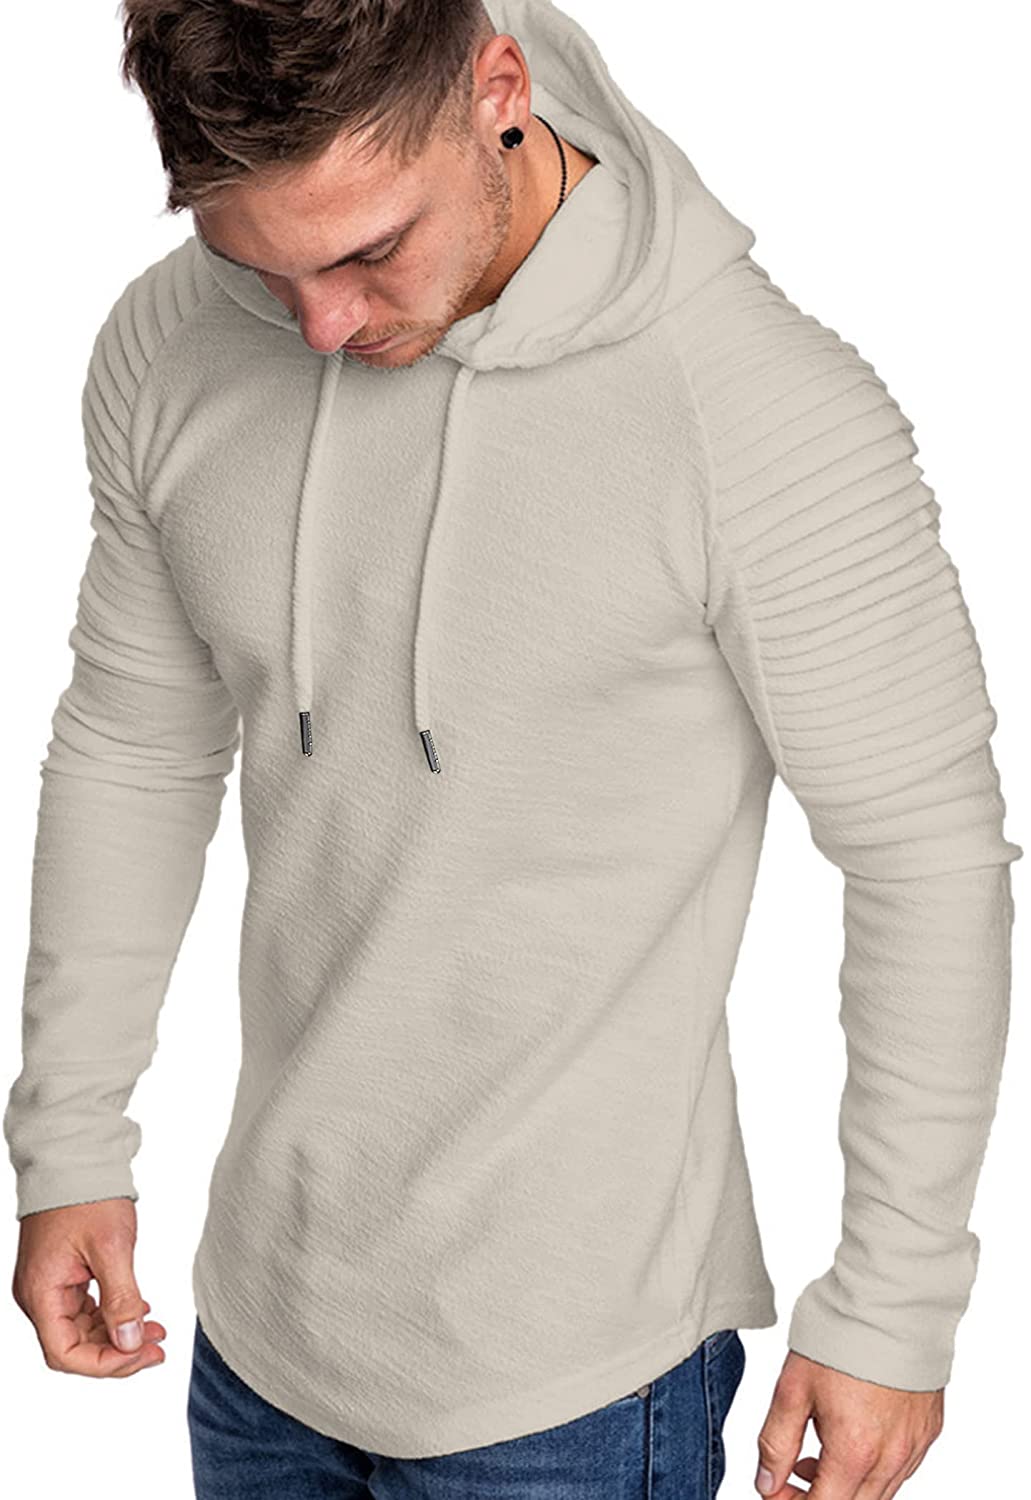 COOFANDY Men Gym Athletic Hoodies Lightweight Pleated Raglan Sleeve Sweatshirts 